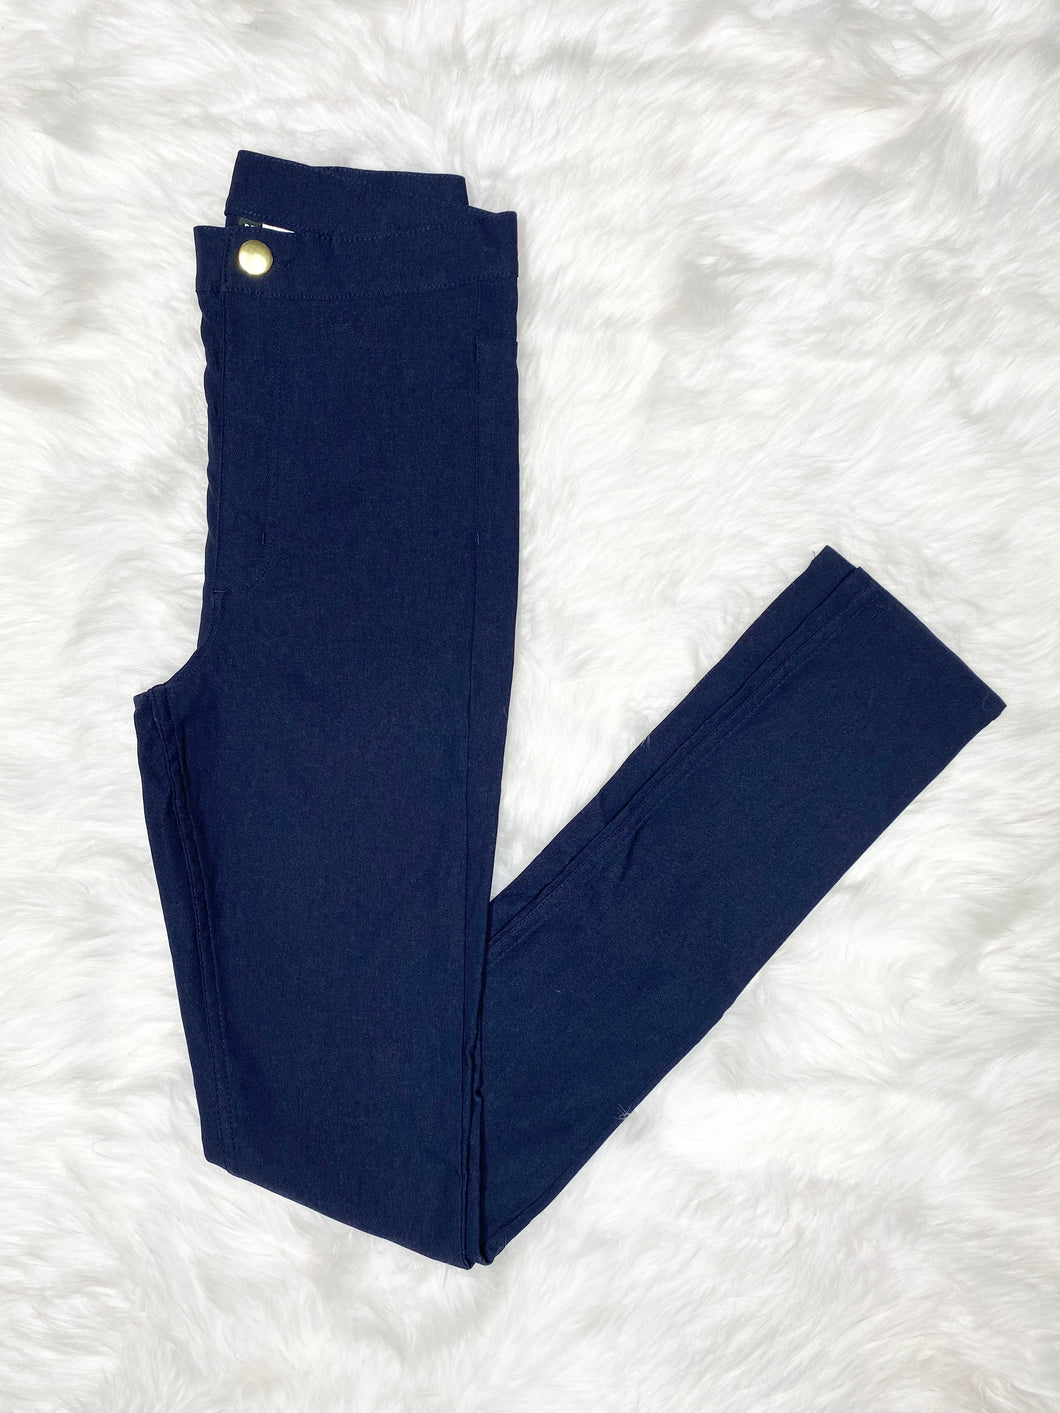 H&M Navy Blue Skinny Pants (US6)